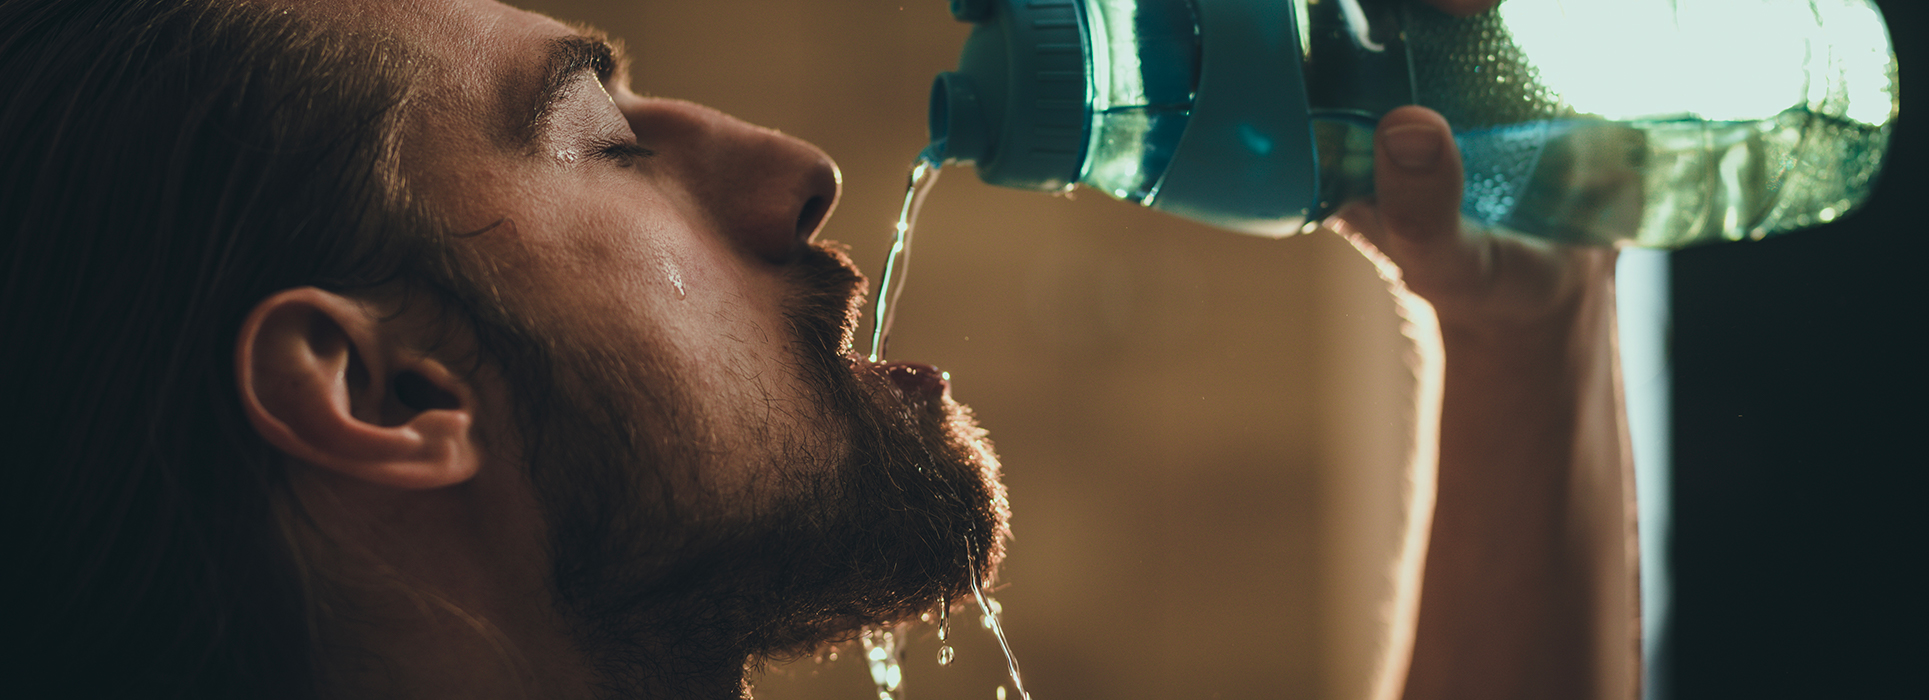 Quanta acqua bere al giorno: l’importanza della corretta idratazione